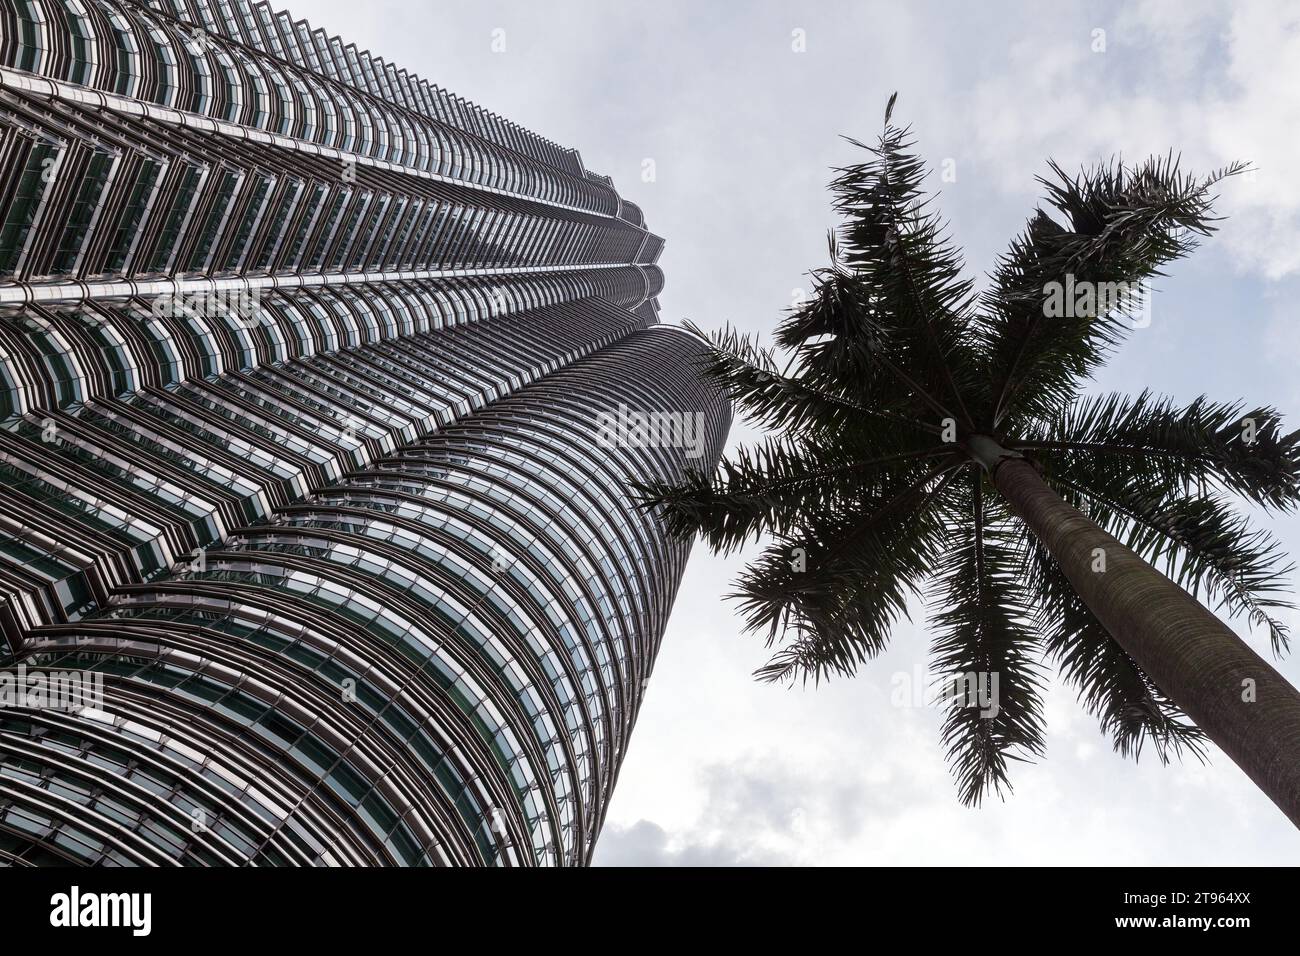 Kuala Lumpur, Malaisie - 25 novembre 2019 : Tours jumelles Petronas et silhouette d'un palmier sous un ciel nuageux Banque D'Images